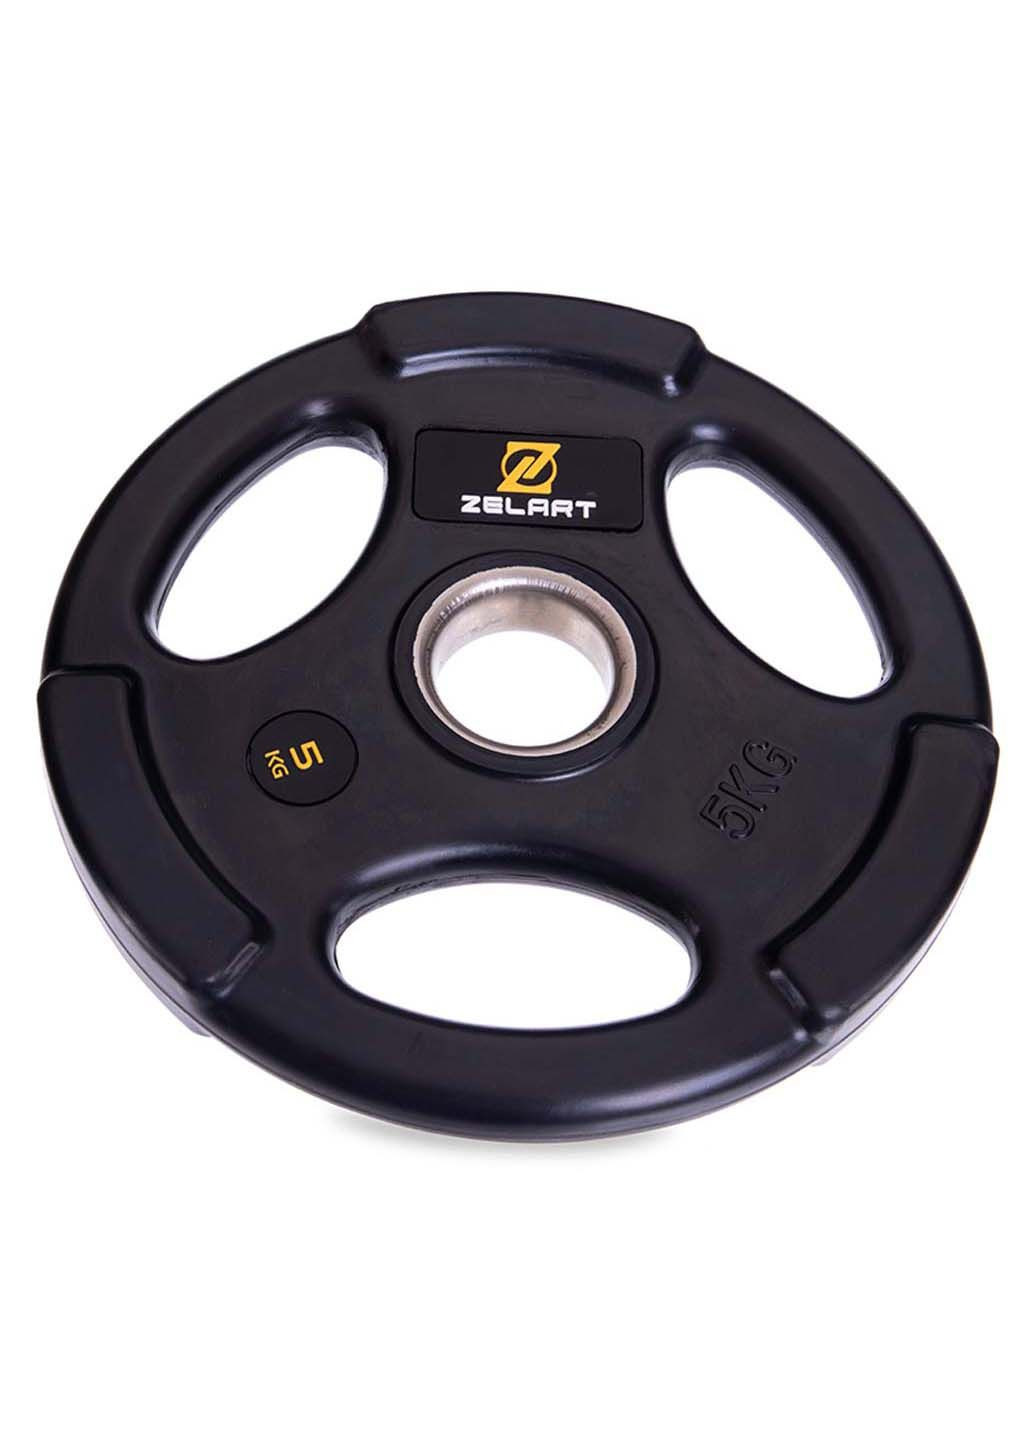 Млинці диски гумові TA-2673 5 кг Zelart (286043497)